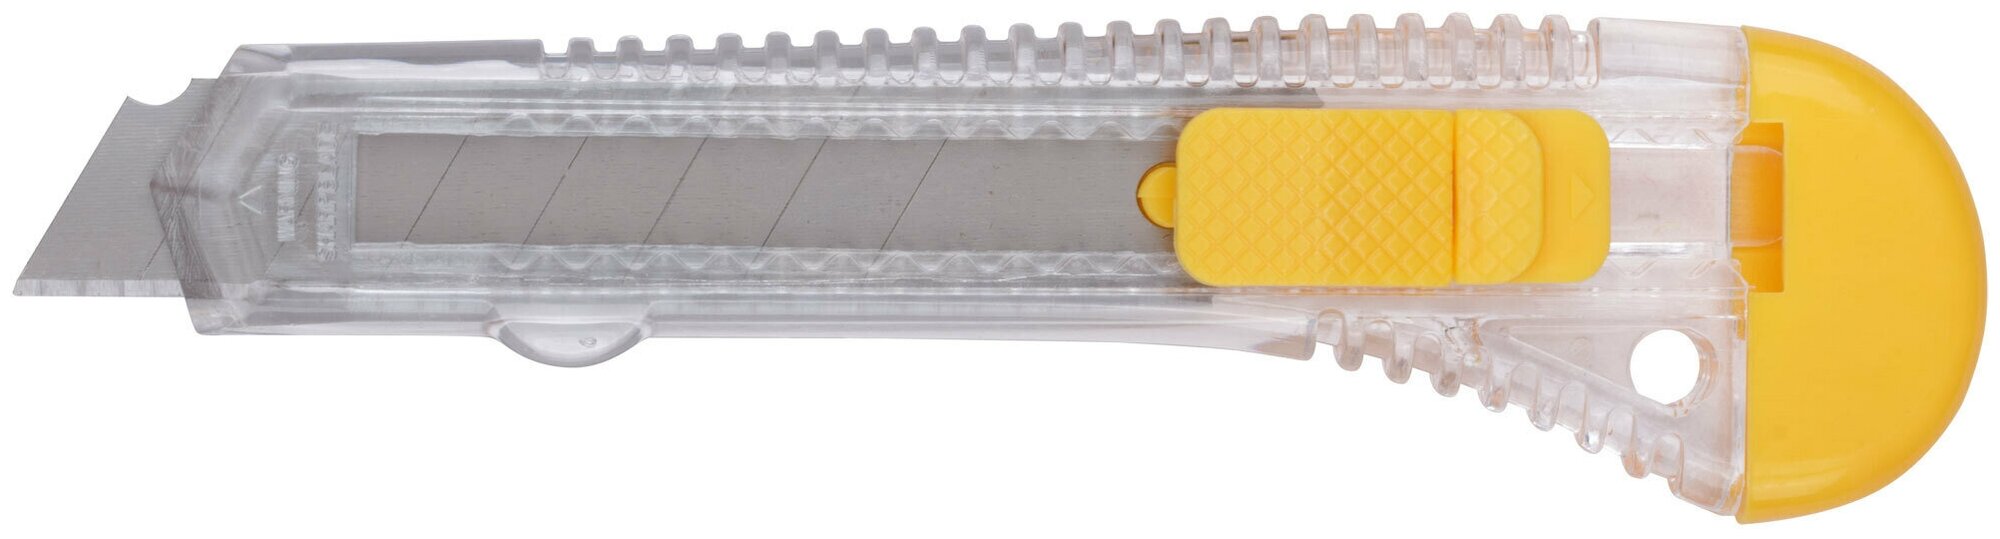 Нож технический 18 мм пластиковый 10218